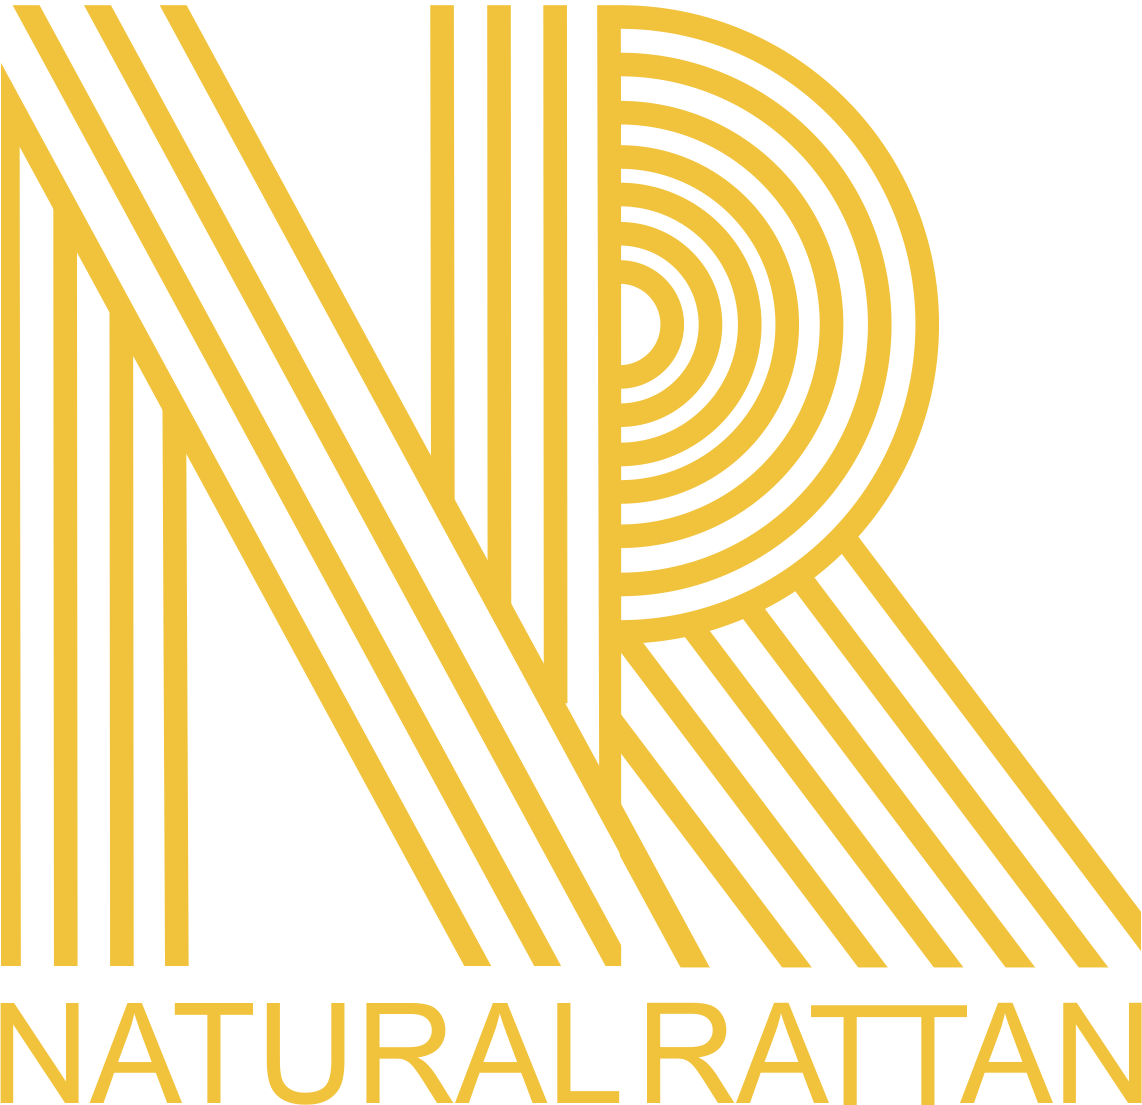 Natural rattan furniture | Cane furniture | Rattan kids furniture |